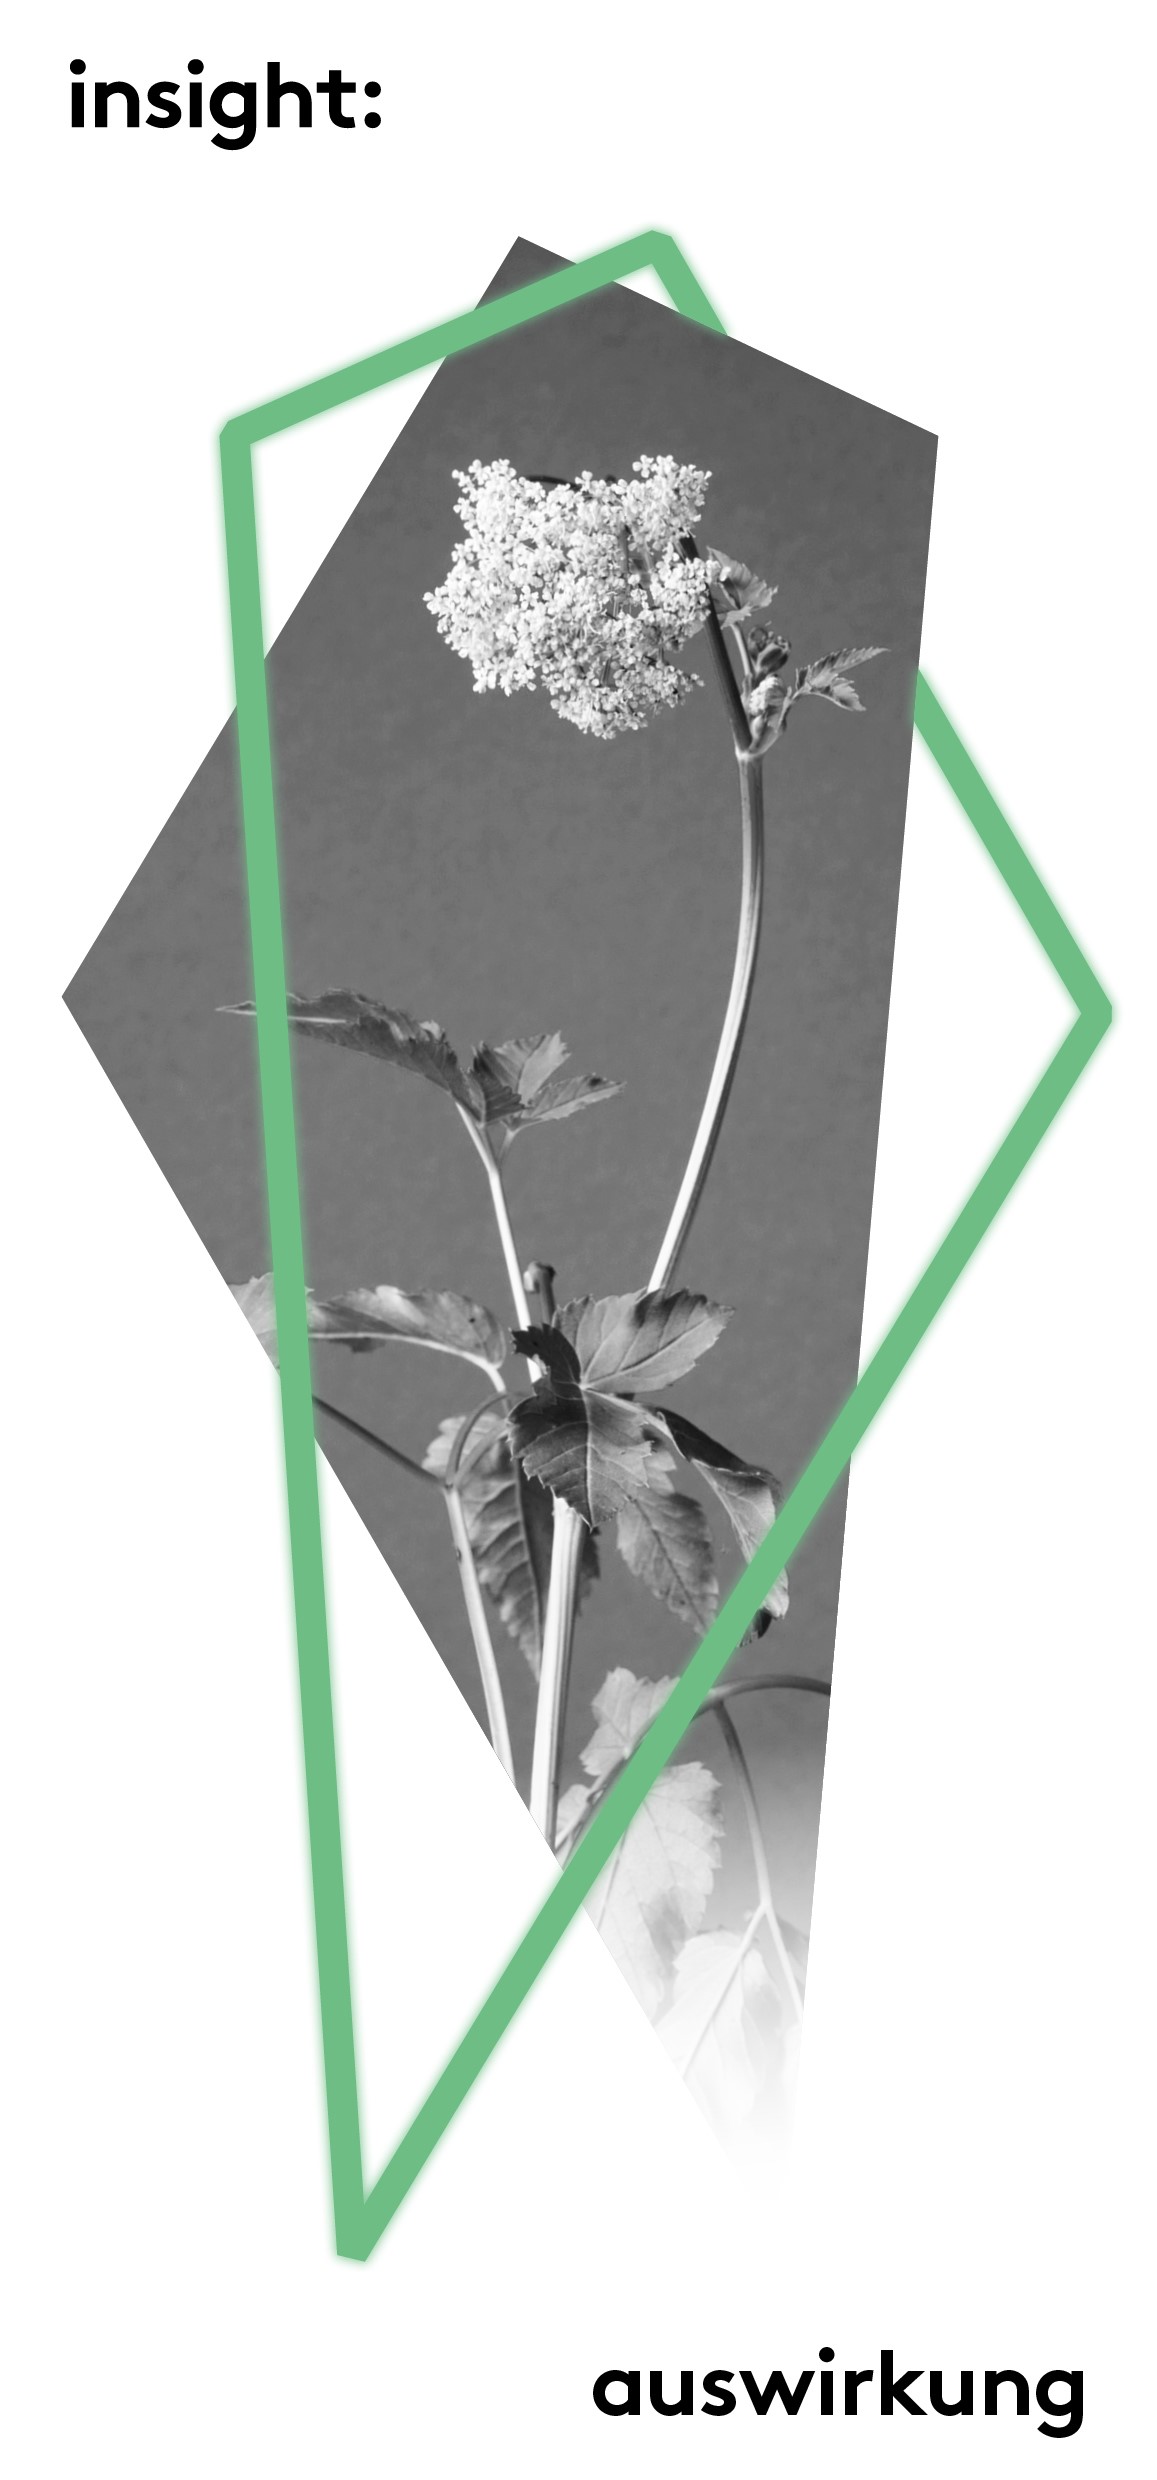 Ausstellungsflyer. Schwarz-weiß Fotografie zeigt eine Blume.